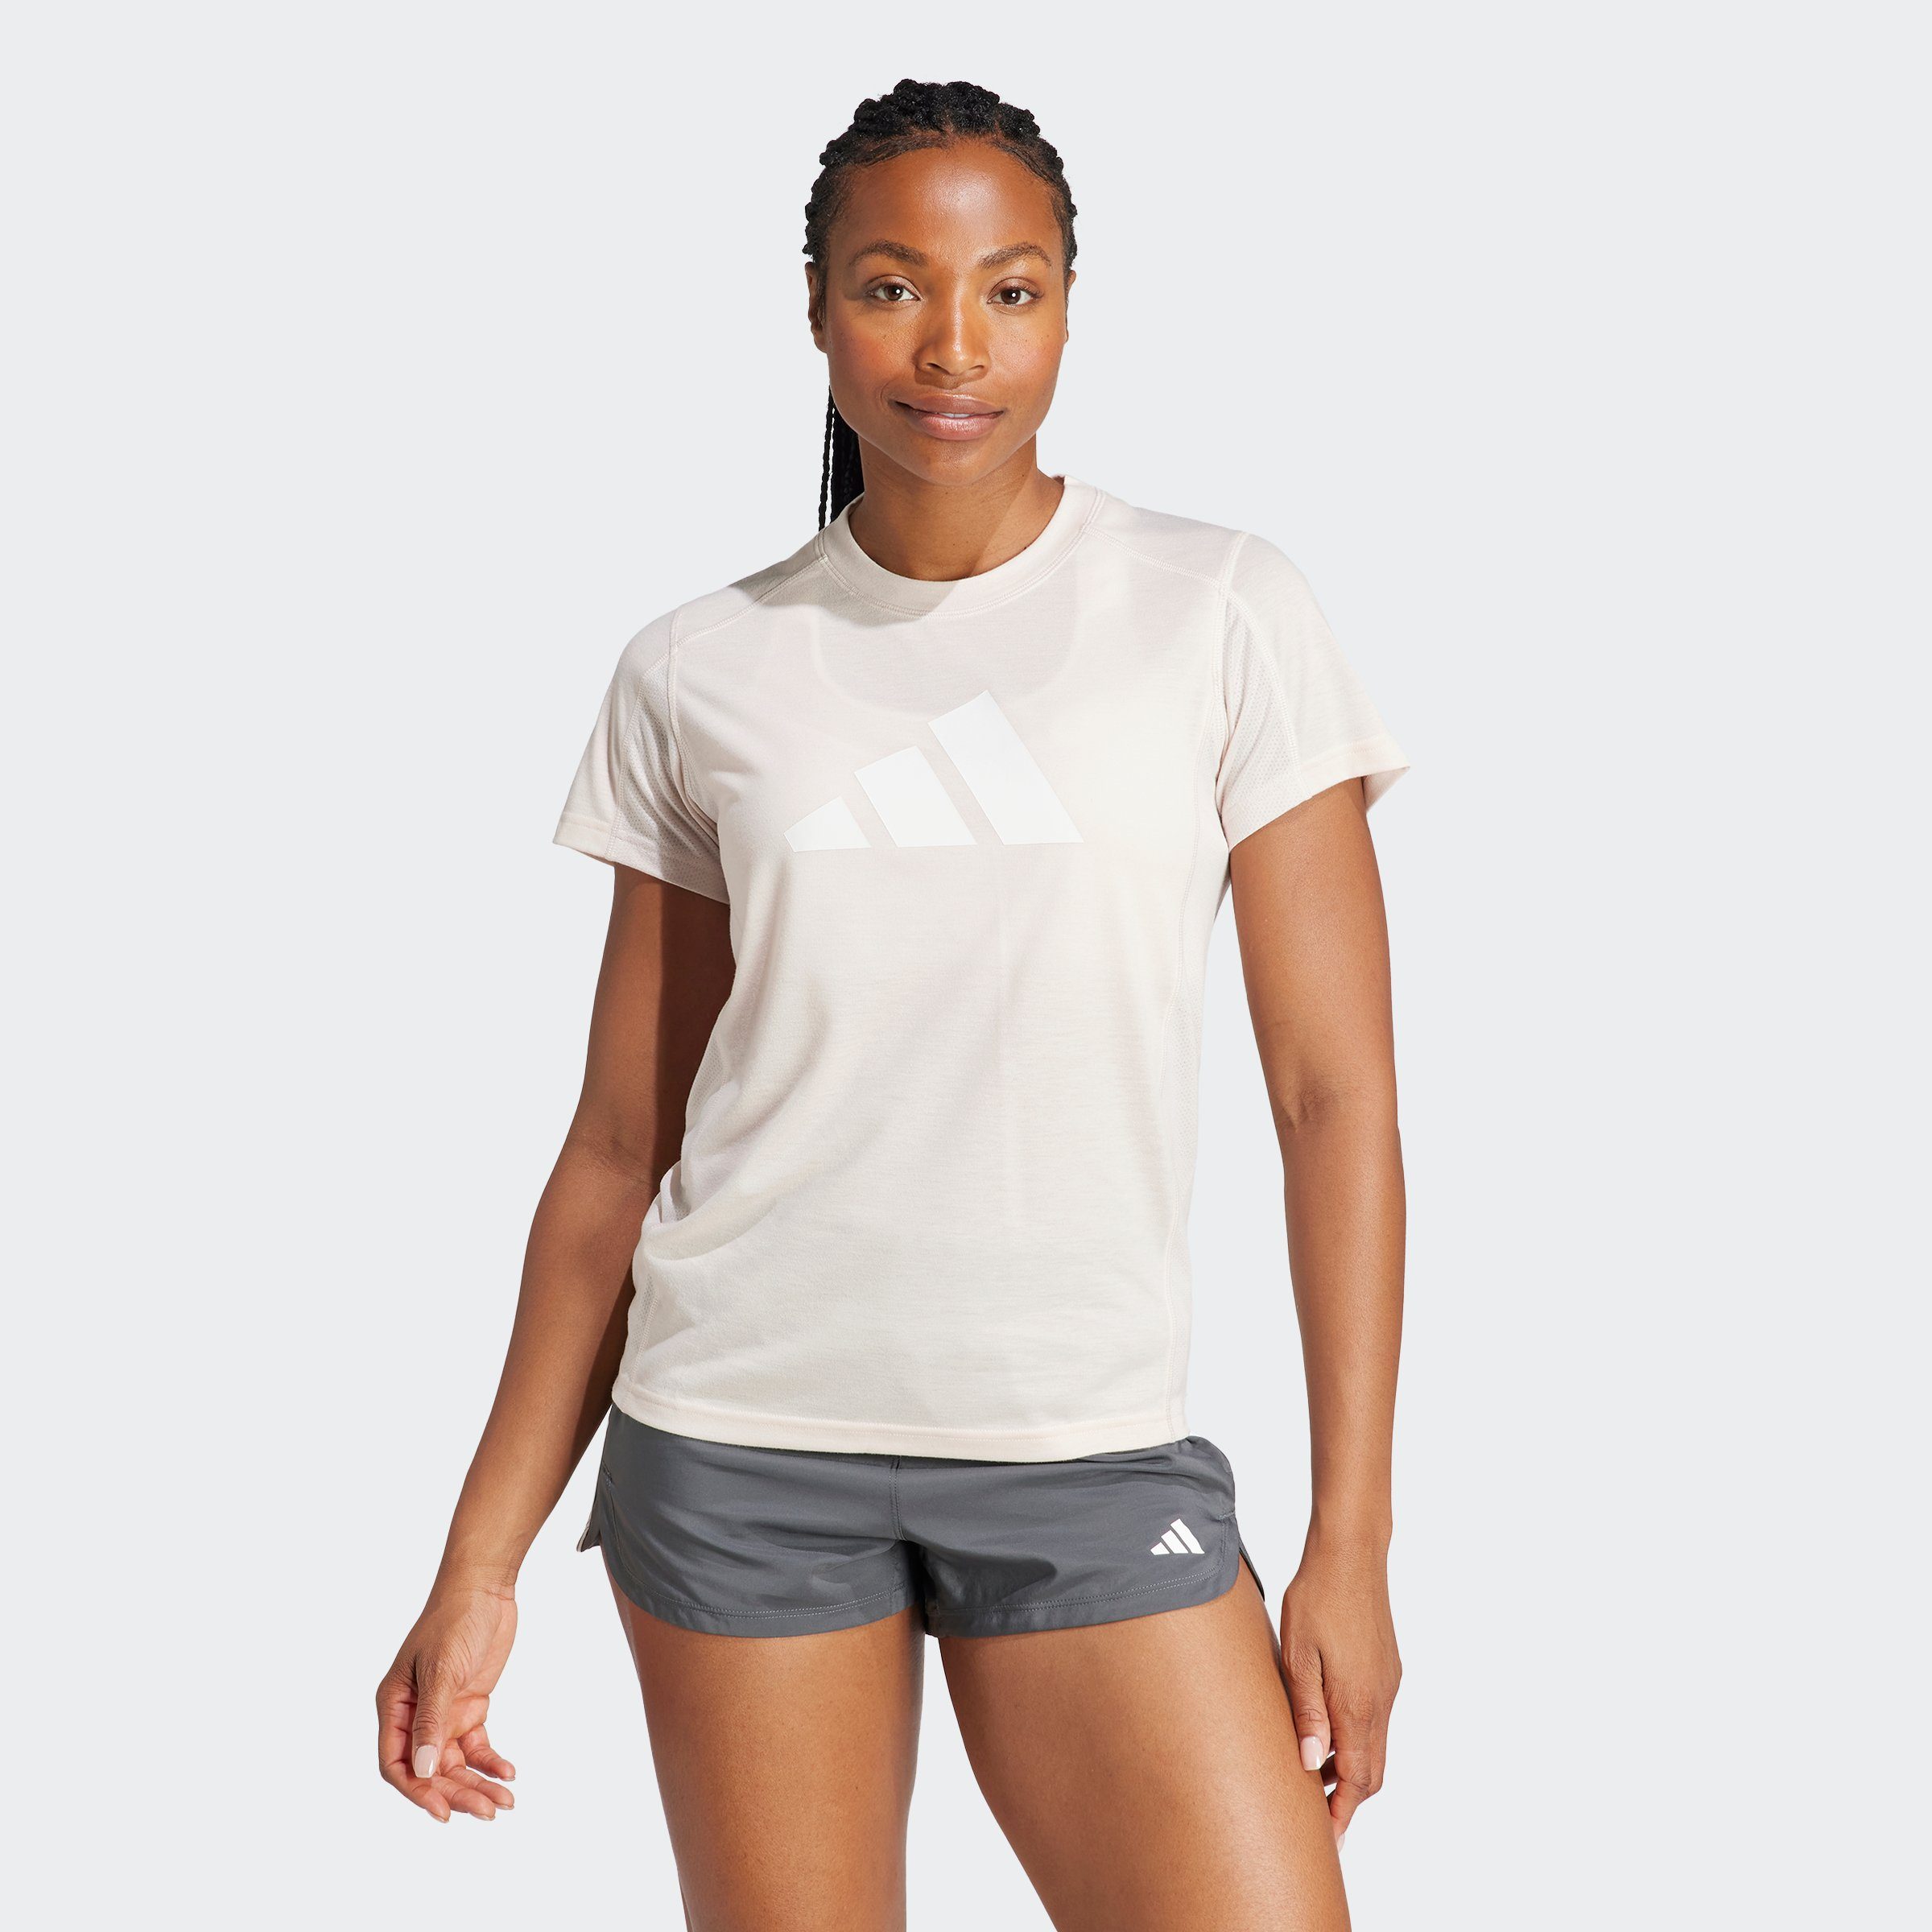 TR-ES T PUTMAU/WHITE LOGO adidas T-Shirt Performance